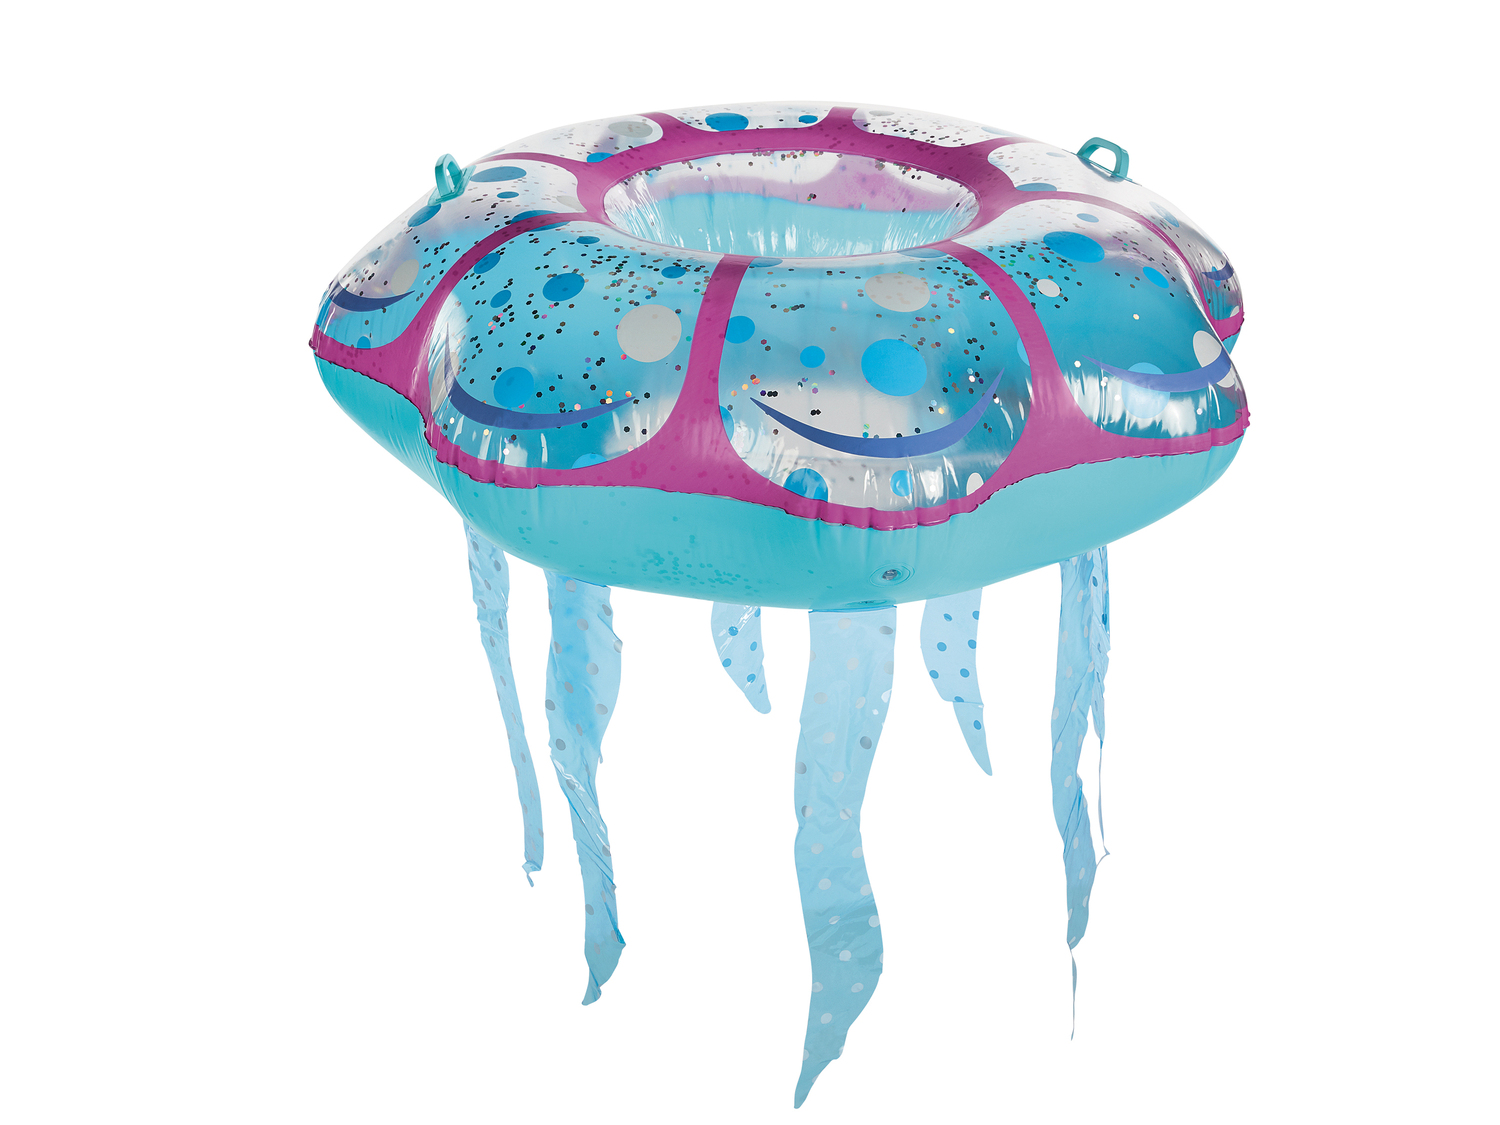 Gonfiabili da spiaggia Crivit, prezzo 12.99 € 
- Medusa: (gonfiato): 116 x 116 ...